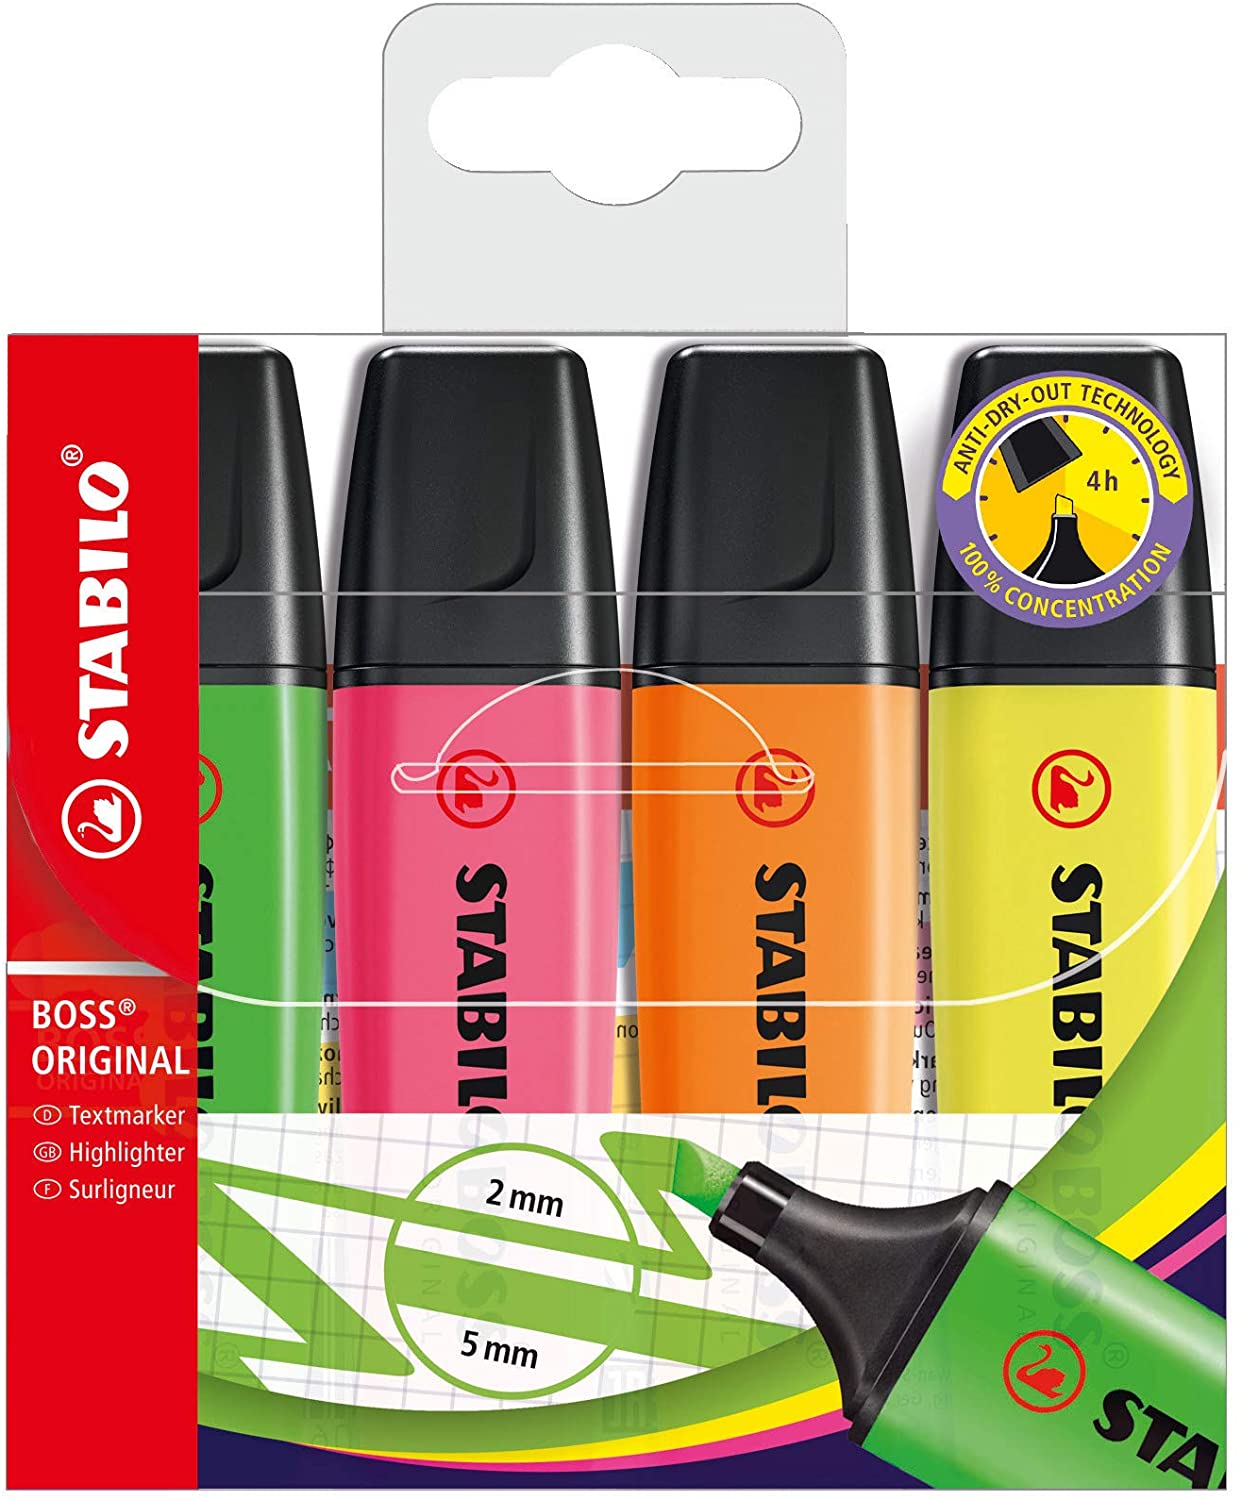 Stabilo Boss 70 Pack de 4 Marcadores Fluorescentes - Trazo entre 2 y 5mm - Recargable - Tinta con Base de Agua - Colores Surtidos